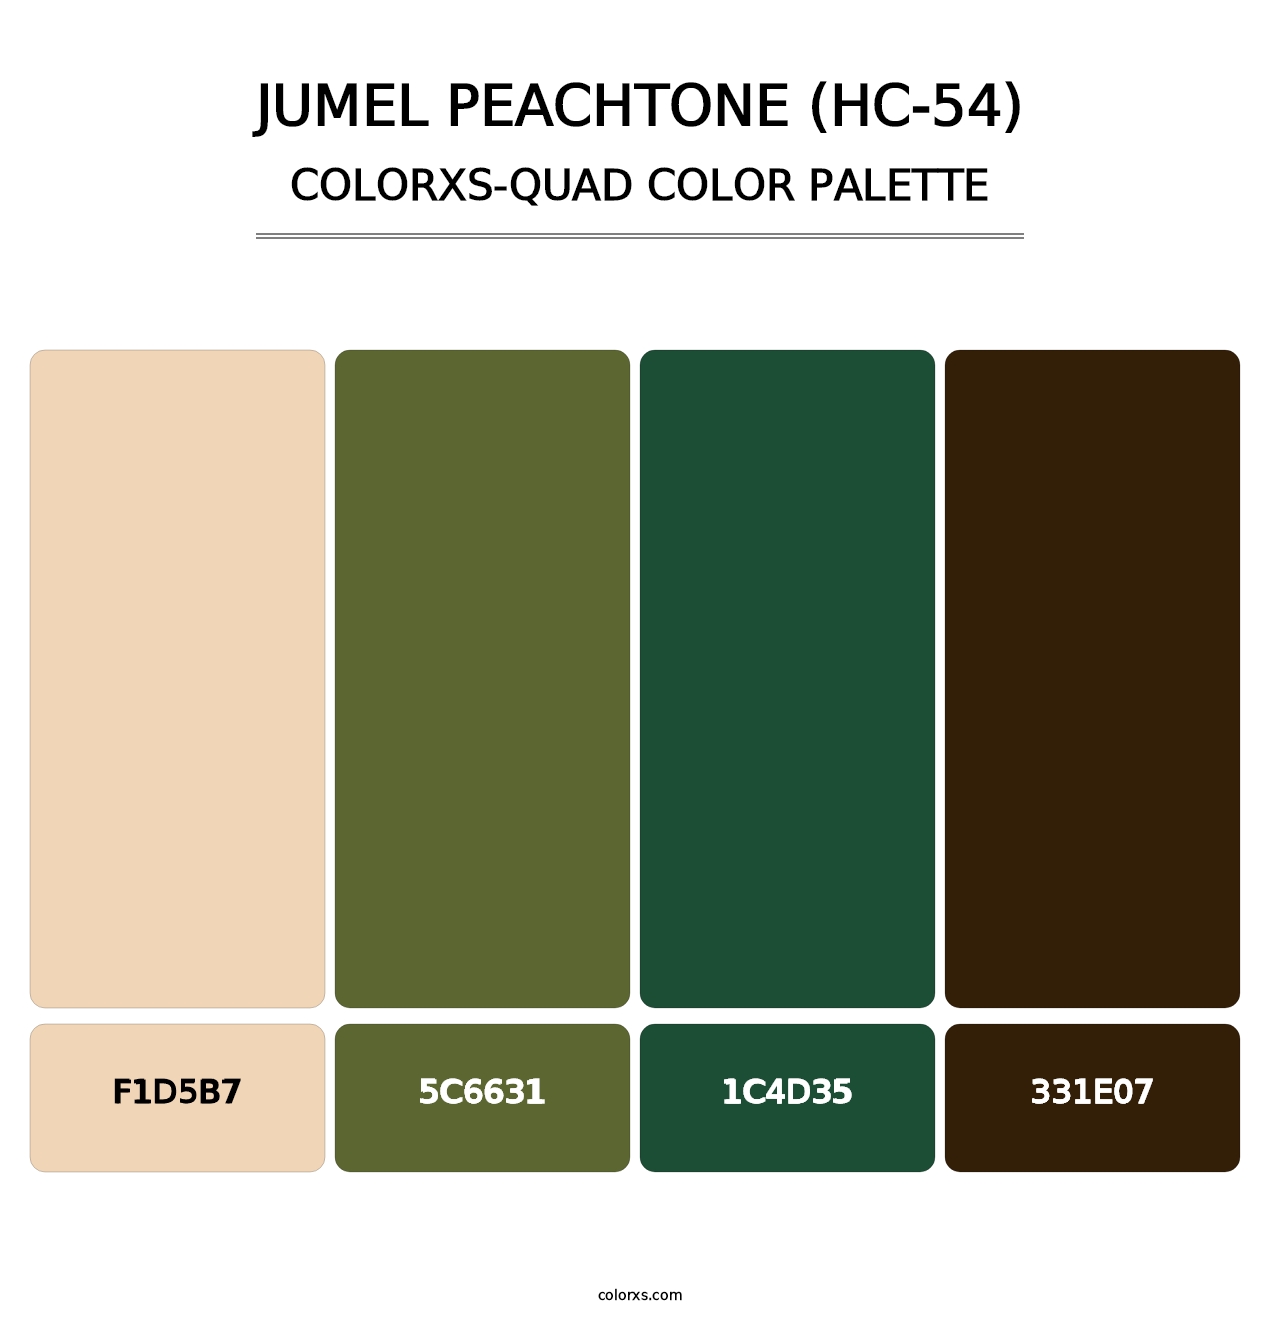 Jumel Peachtone (HC-54) - Colorxs Quad Palette